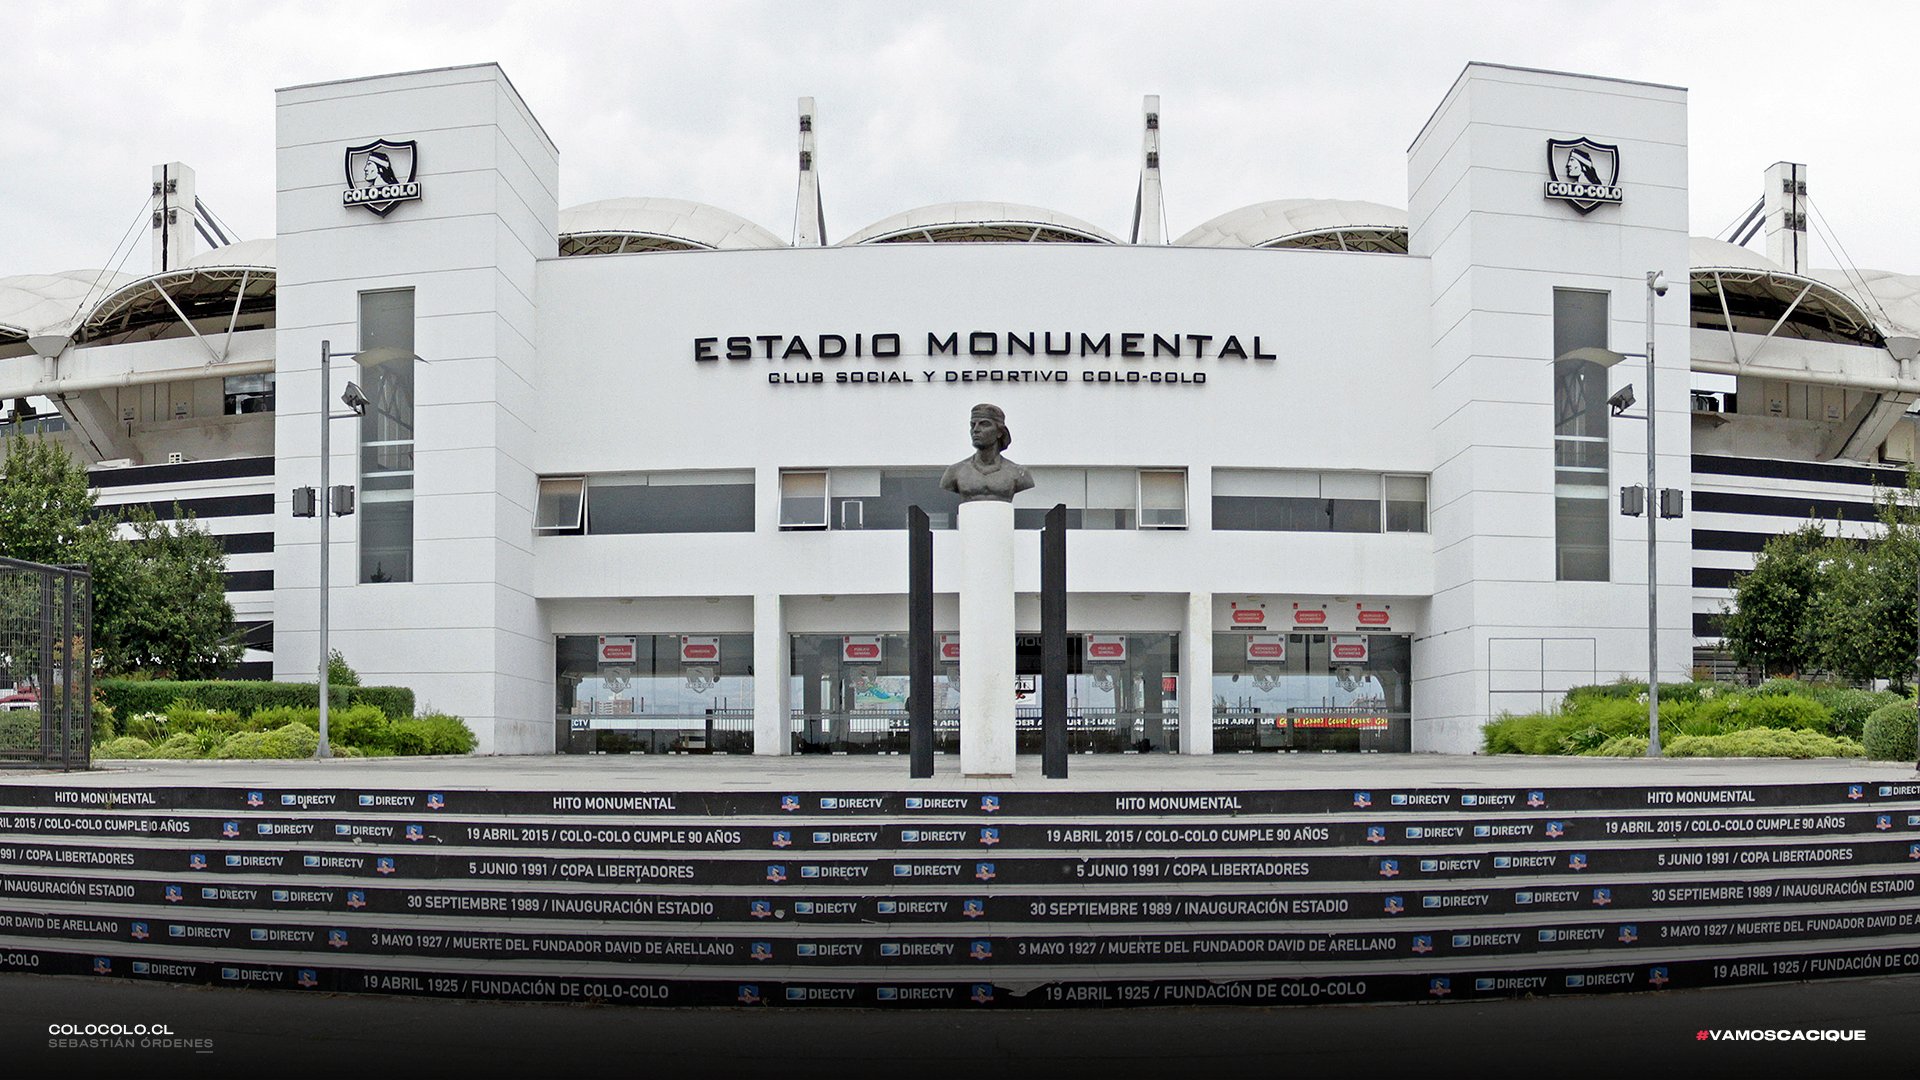 Colo-Colo on X: "¡Monumental de estándar internacional! En el Estadio  Monumental se realizan extensas jornadas de trabajo para que la Ruca  mantenga su condición de excelencia y de estándar internacional 🏟 🎥: